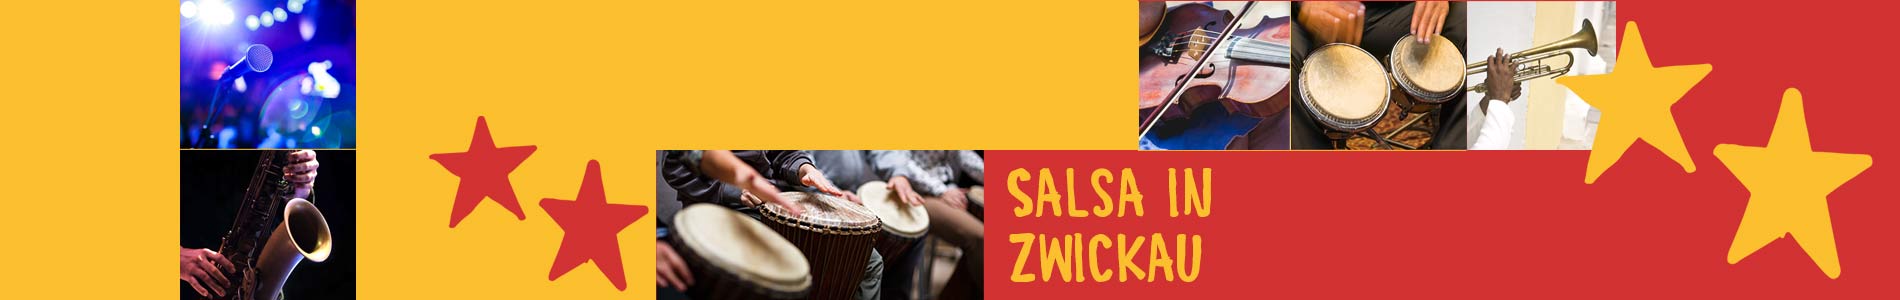 Salsa in Zwickau – Salsa lernen und tanzen, Tanzkurse, Partys, Veranstaltungen